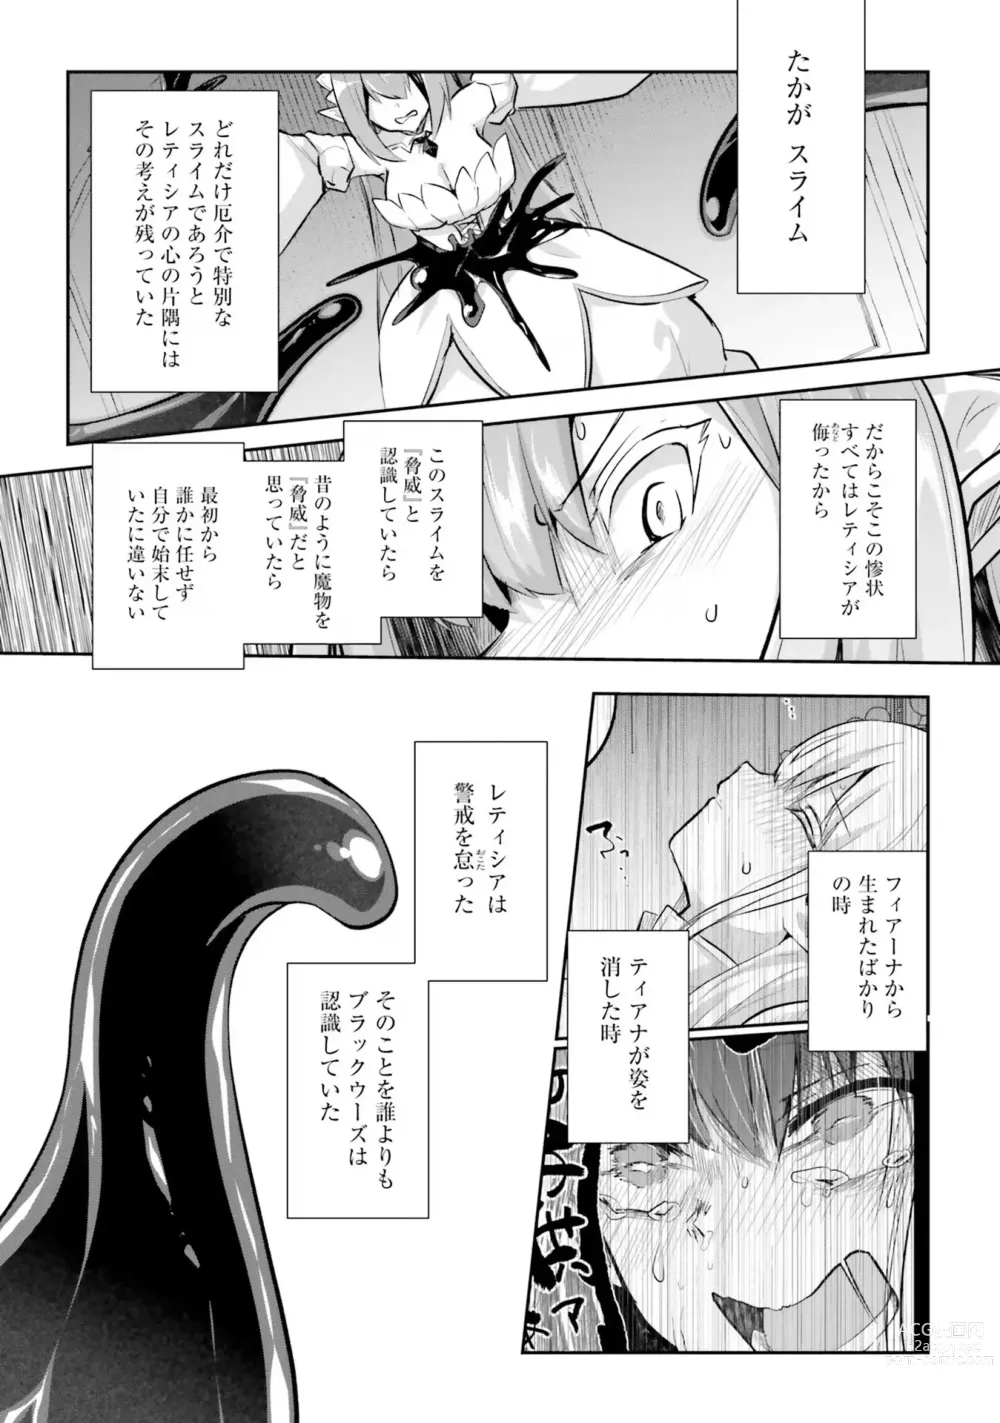 Page 154 of manga Inbi na Doukutsu no Sono Oku de 4